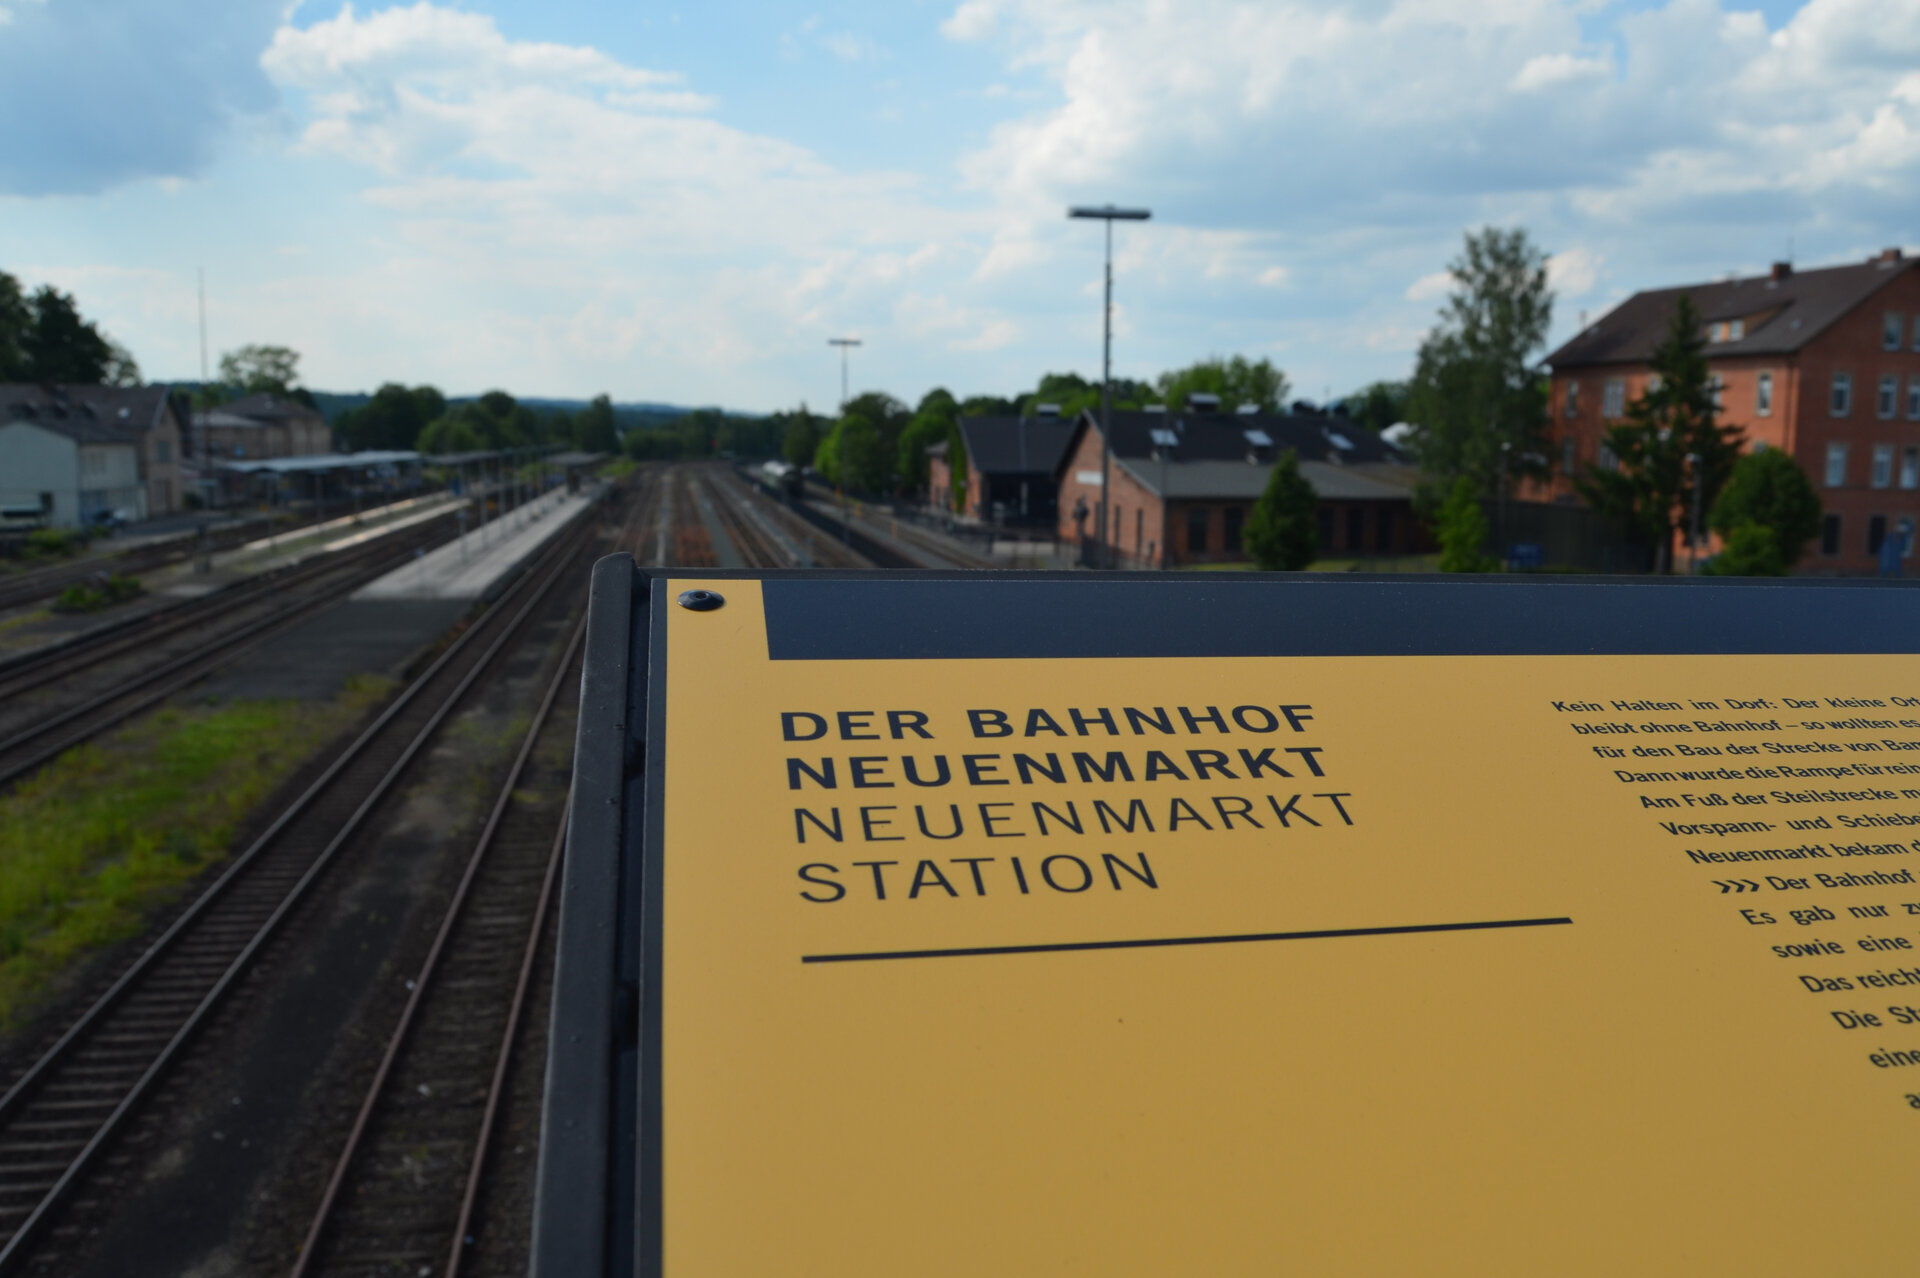 An information board about Neuenmarkt station